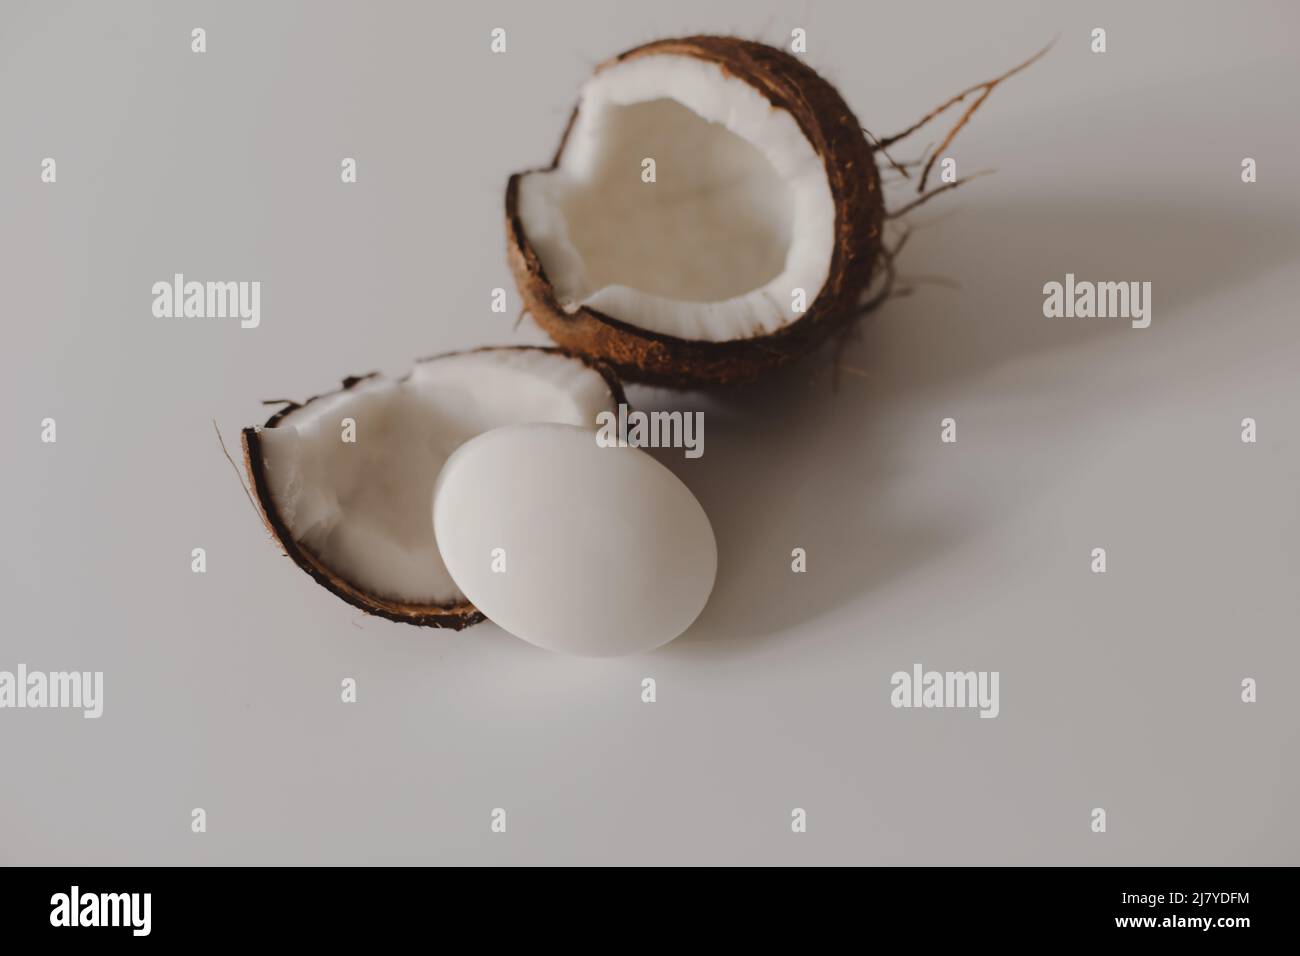 Savon de noix de coco sur fond blanc. ECO savon naturel de noix de coco ou shampooing bar plat sur fond blanc Banque D'Images